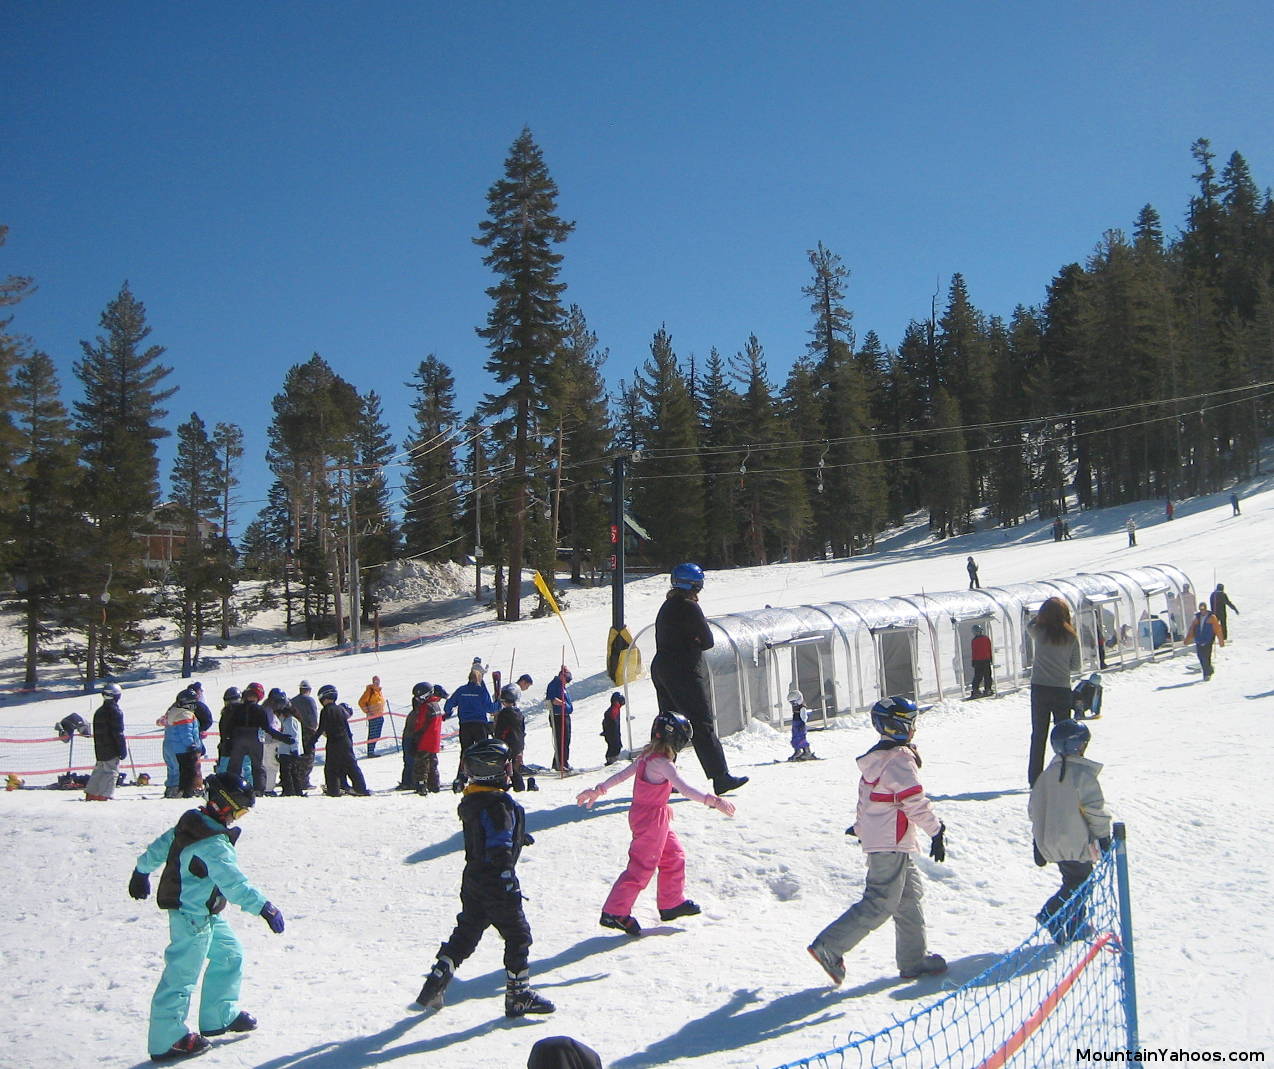 Kids ski classes